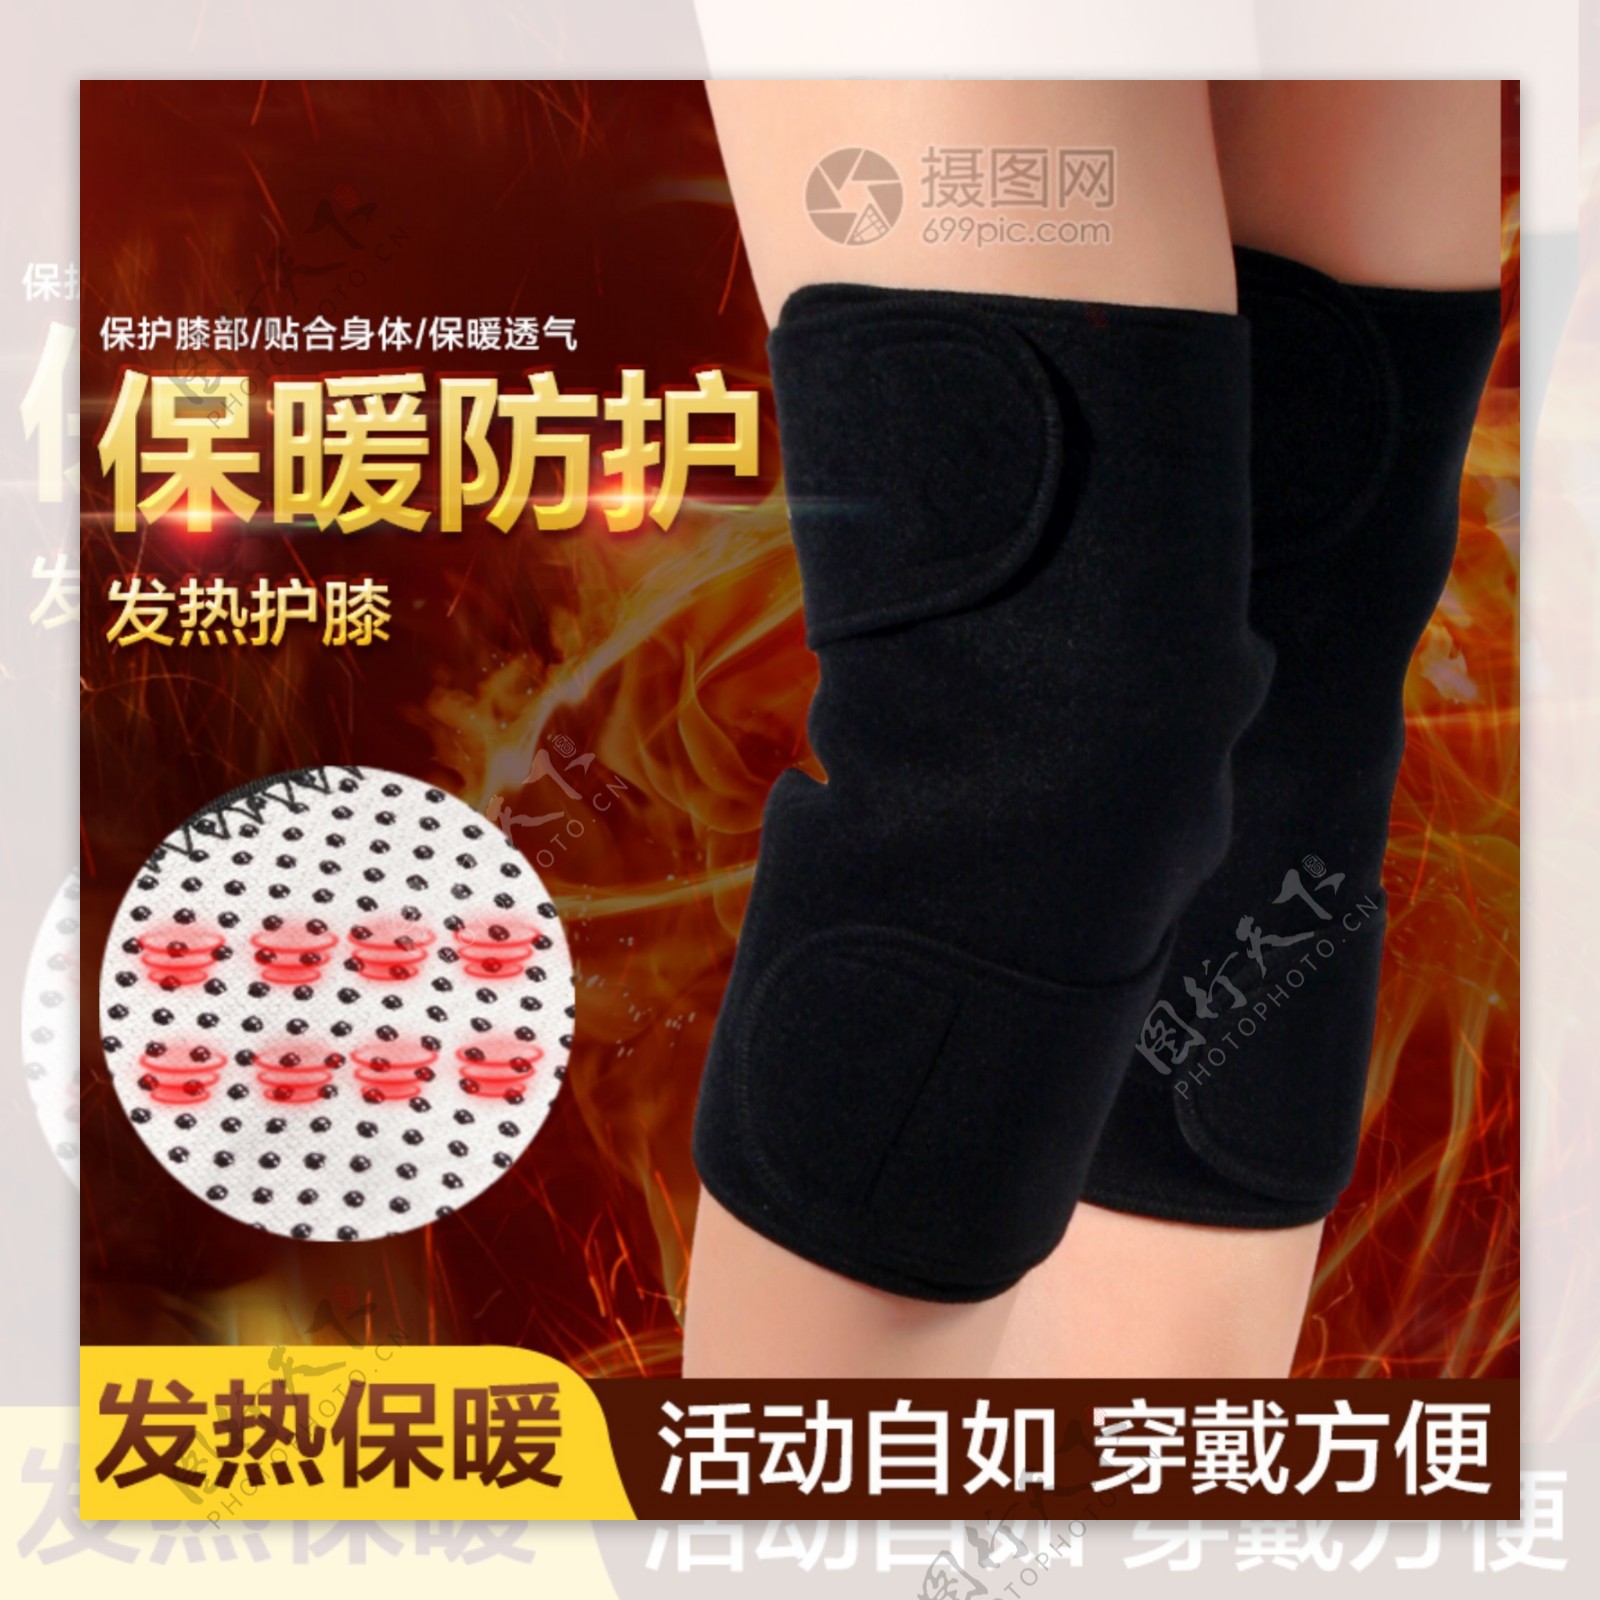 保暖防护发热护膝主图